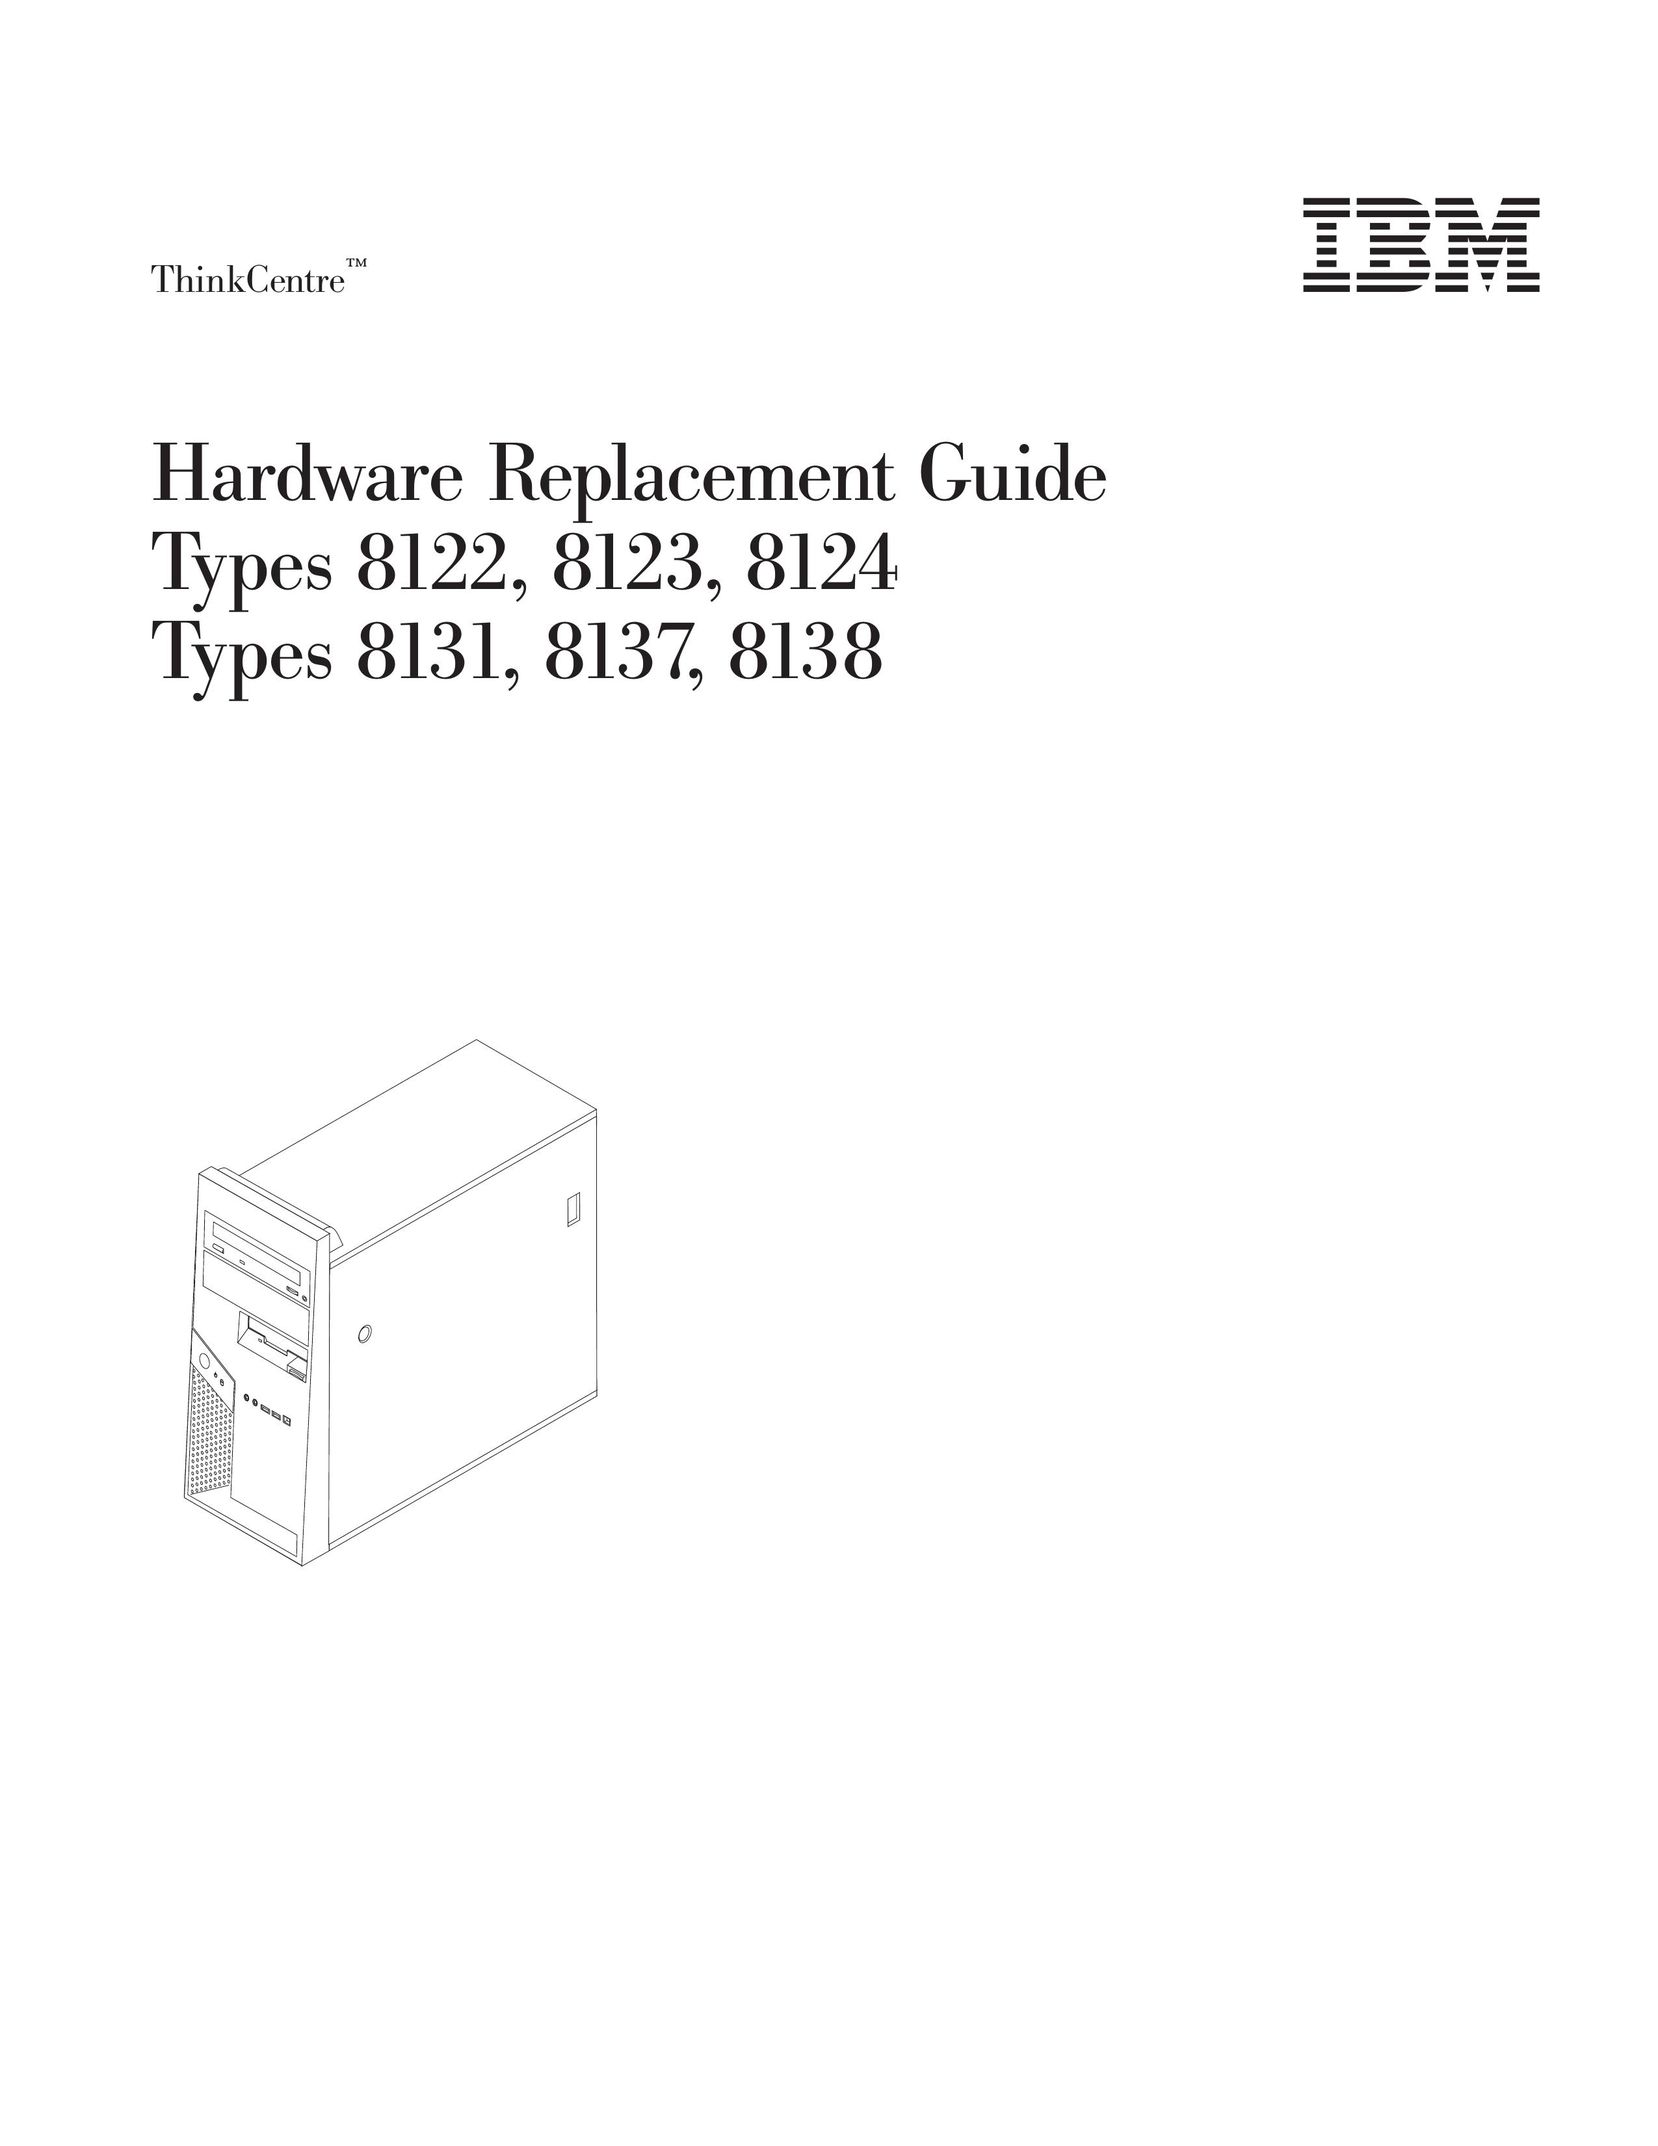 IBM 8138 Computer Hardware User Manual